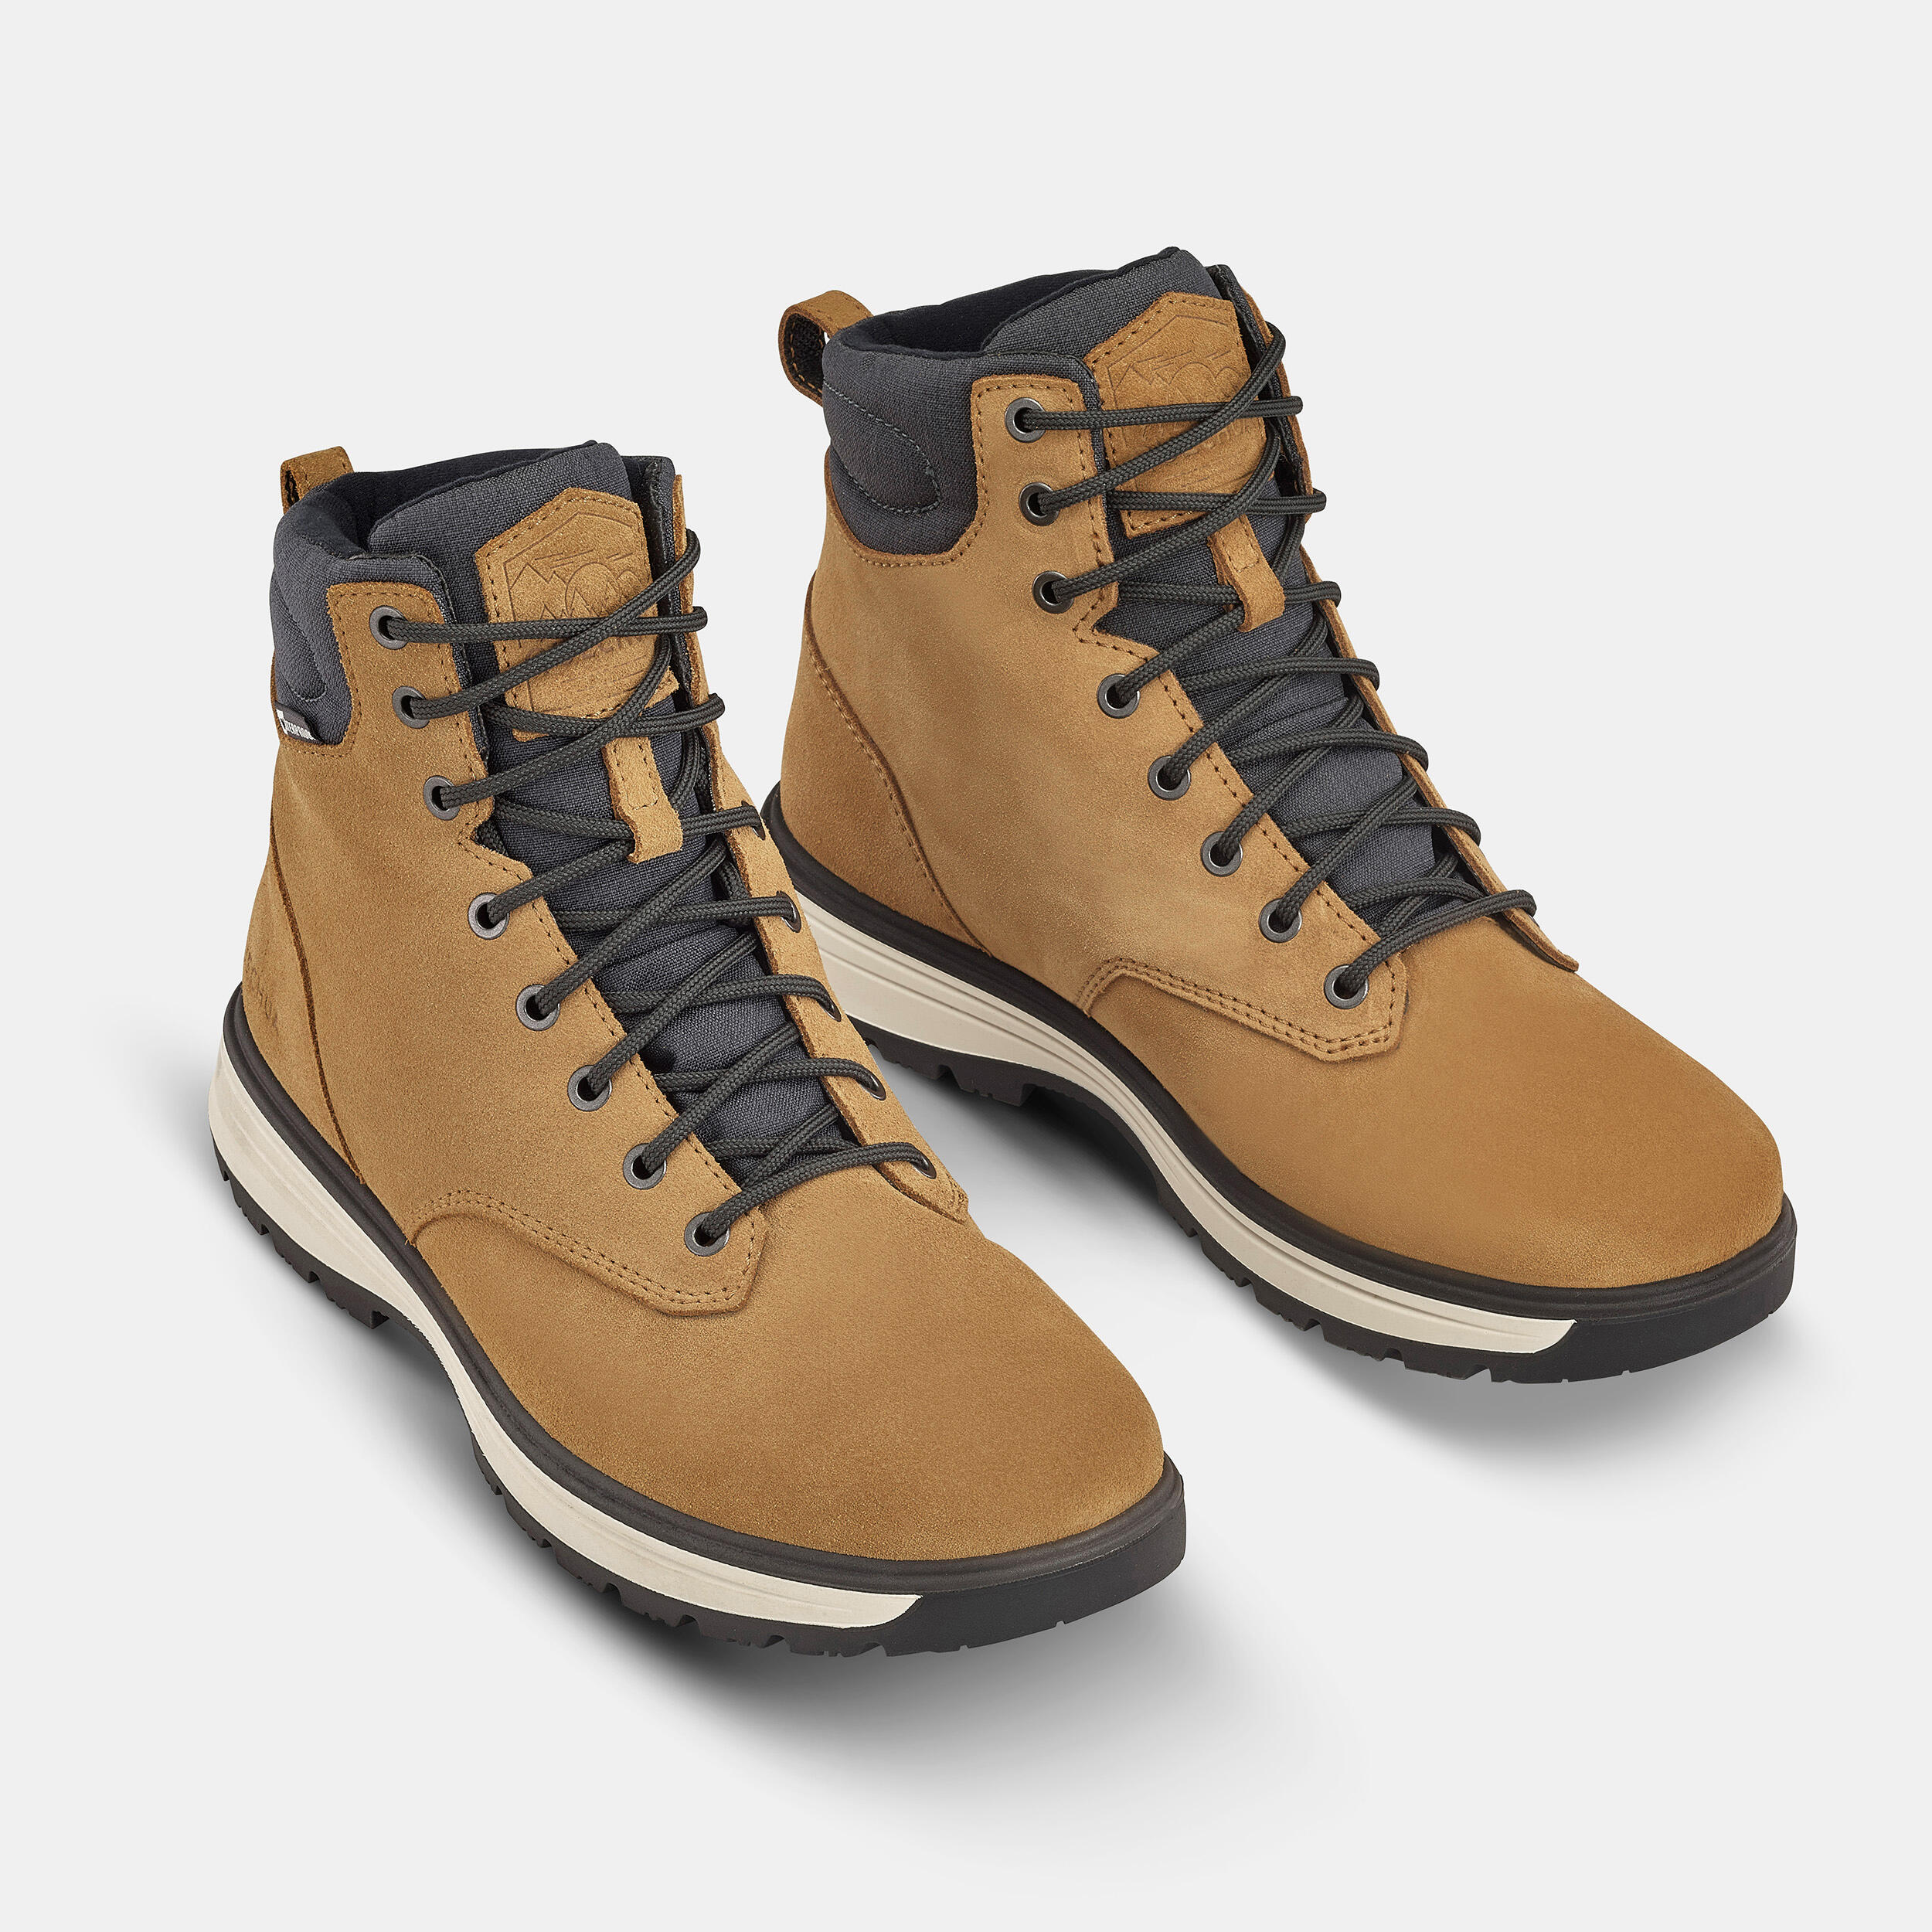 Men’s Waterproof Winter Boots - SH 500 - Dark cinnamon - Quechua ...